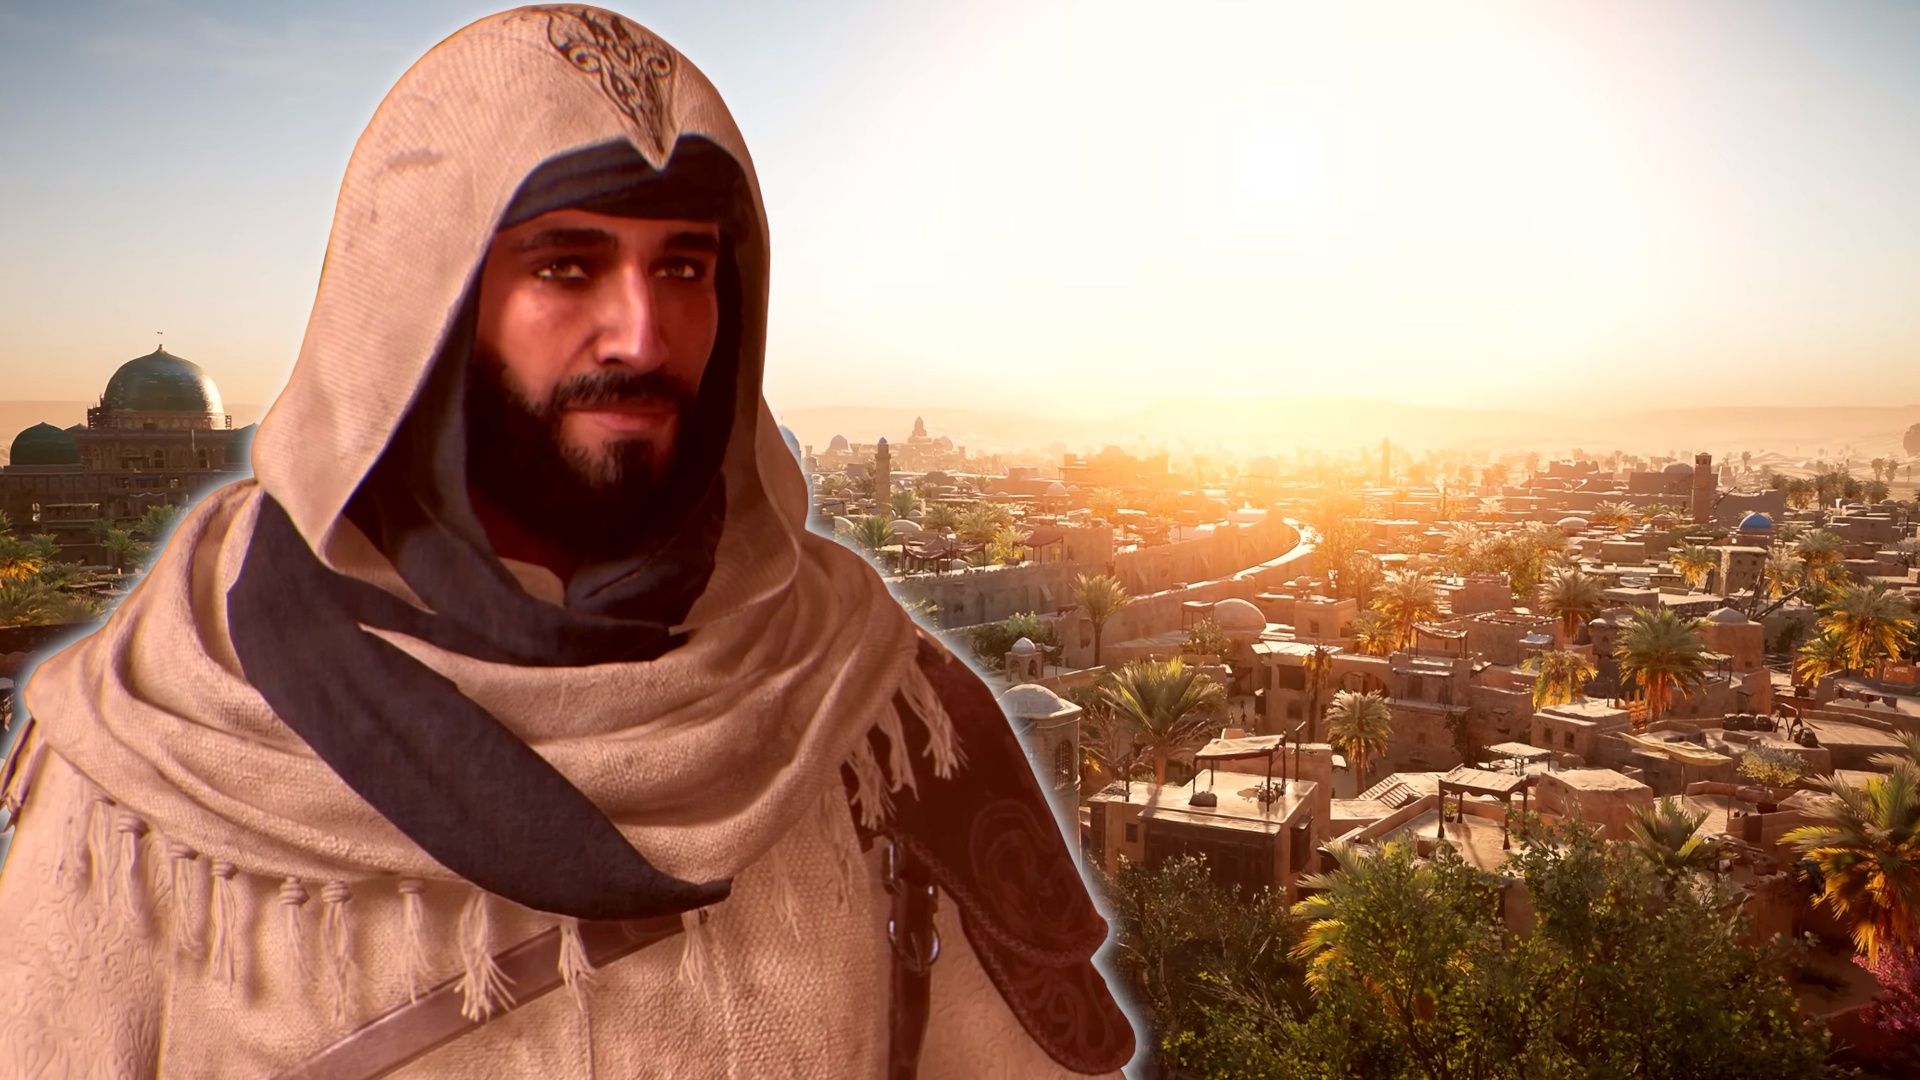 #Assassin’s Creed Mirage: Die Map wird wieder kleiner, Ubisoft zieht einen konkreten Vergleich